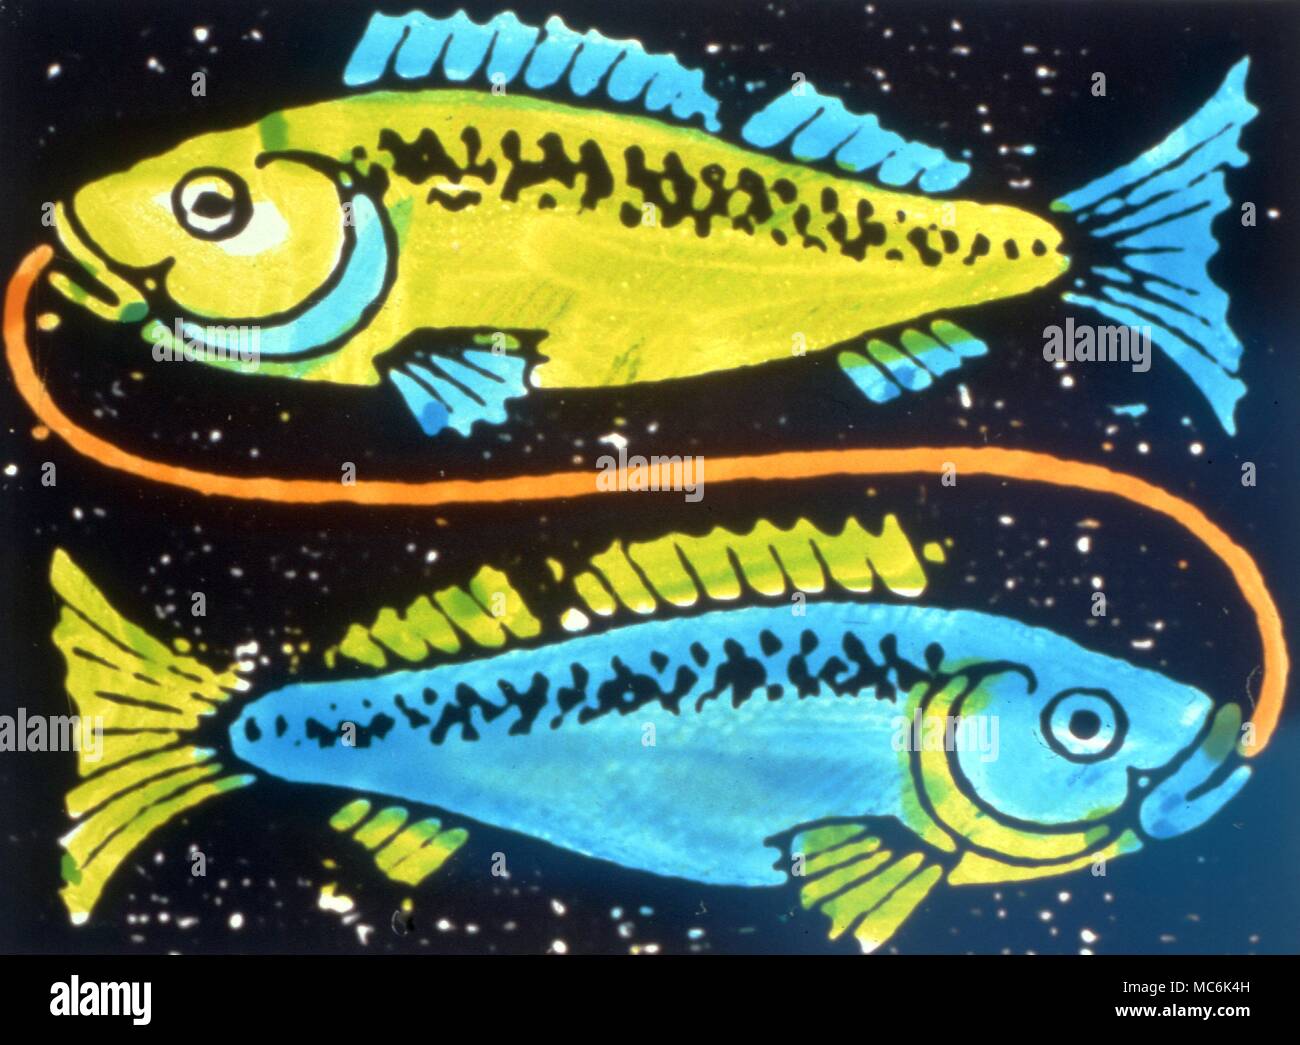 Segni zodiacali. Pesci (1917) segno zodiacale pesci come una coppia di pesci. Dauno libro olandese di astrologia, pubblica nel 1917 Foto Stock